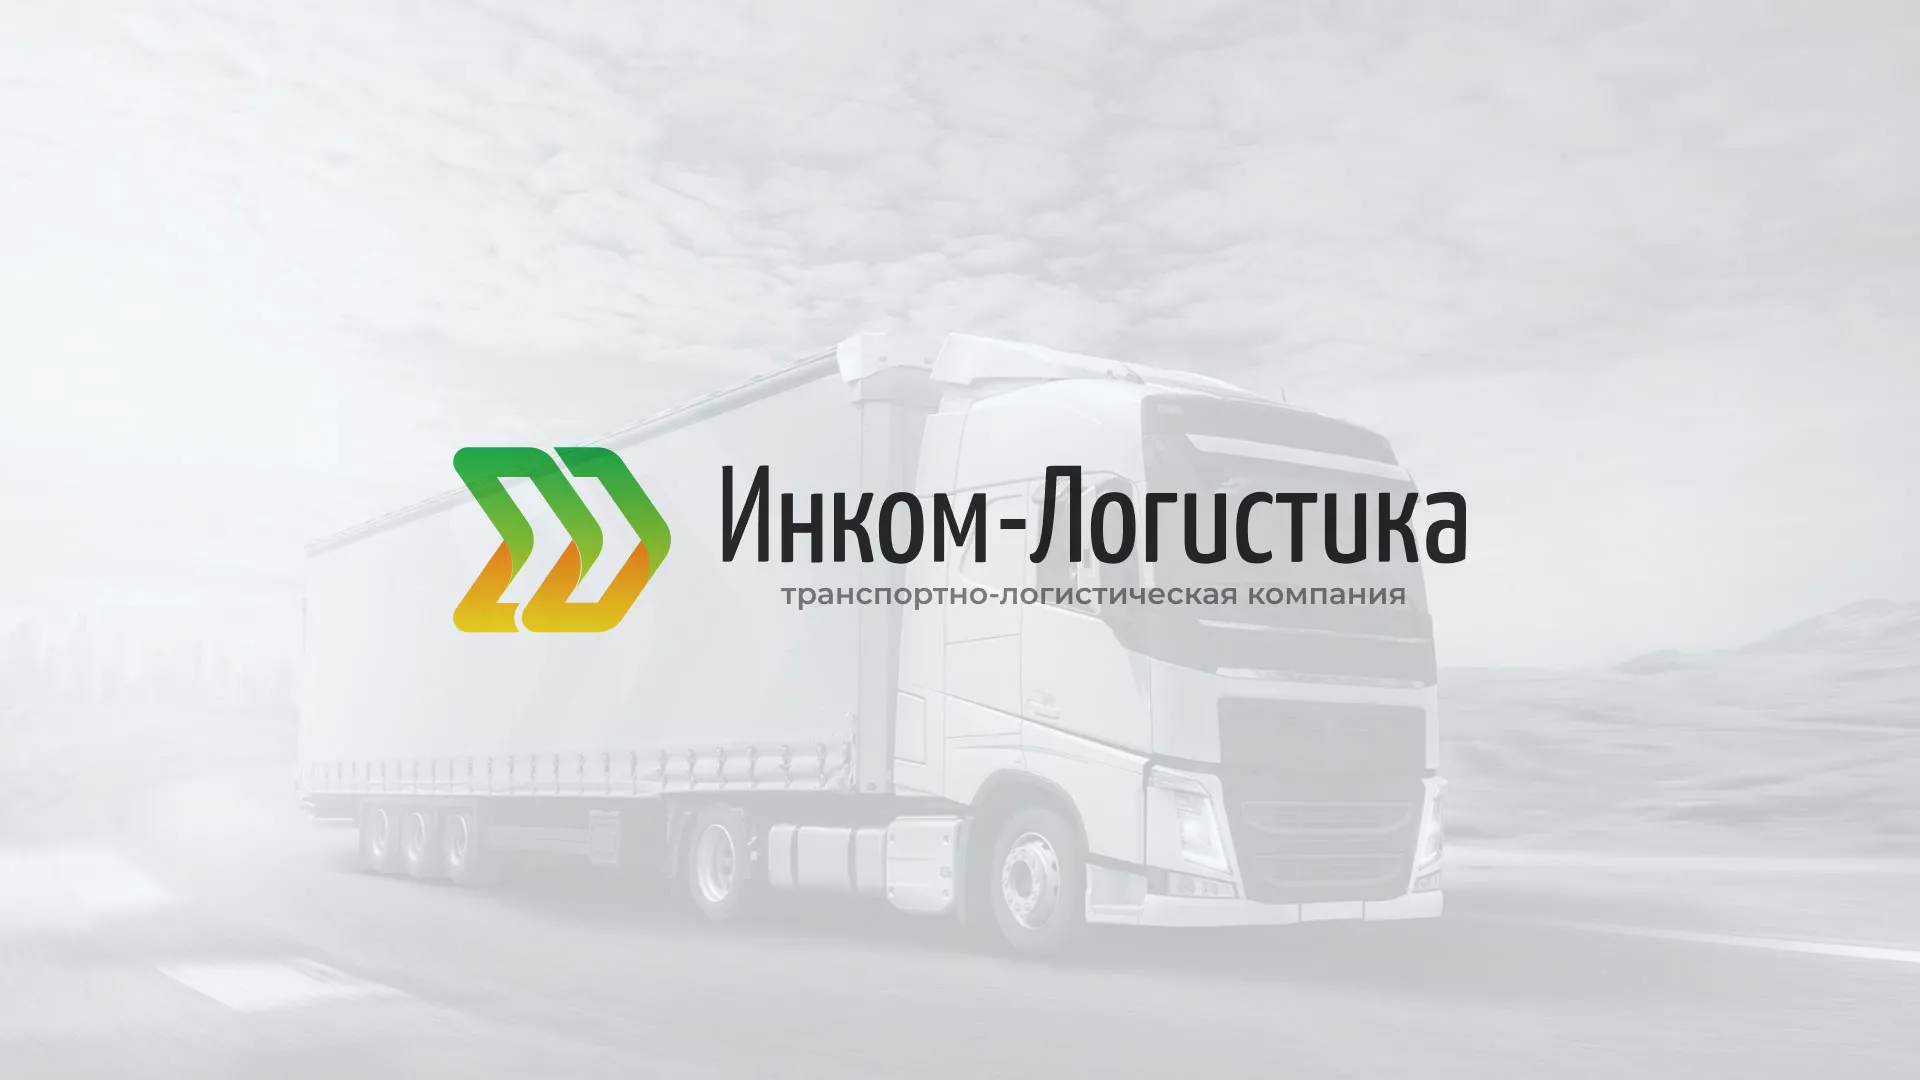 Разработка логотипа и сайта компании «Инком-Логистика» в Невинномысске